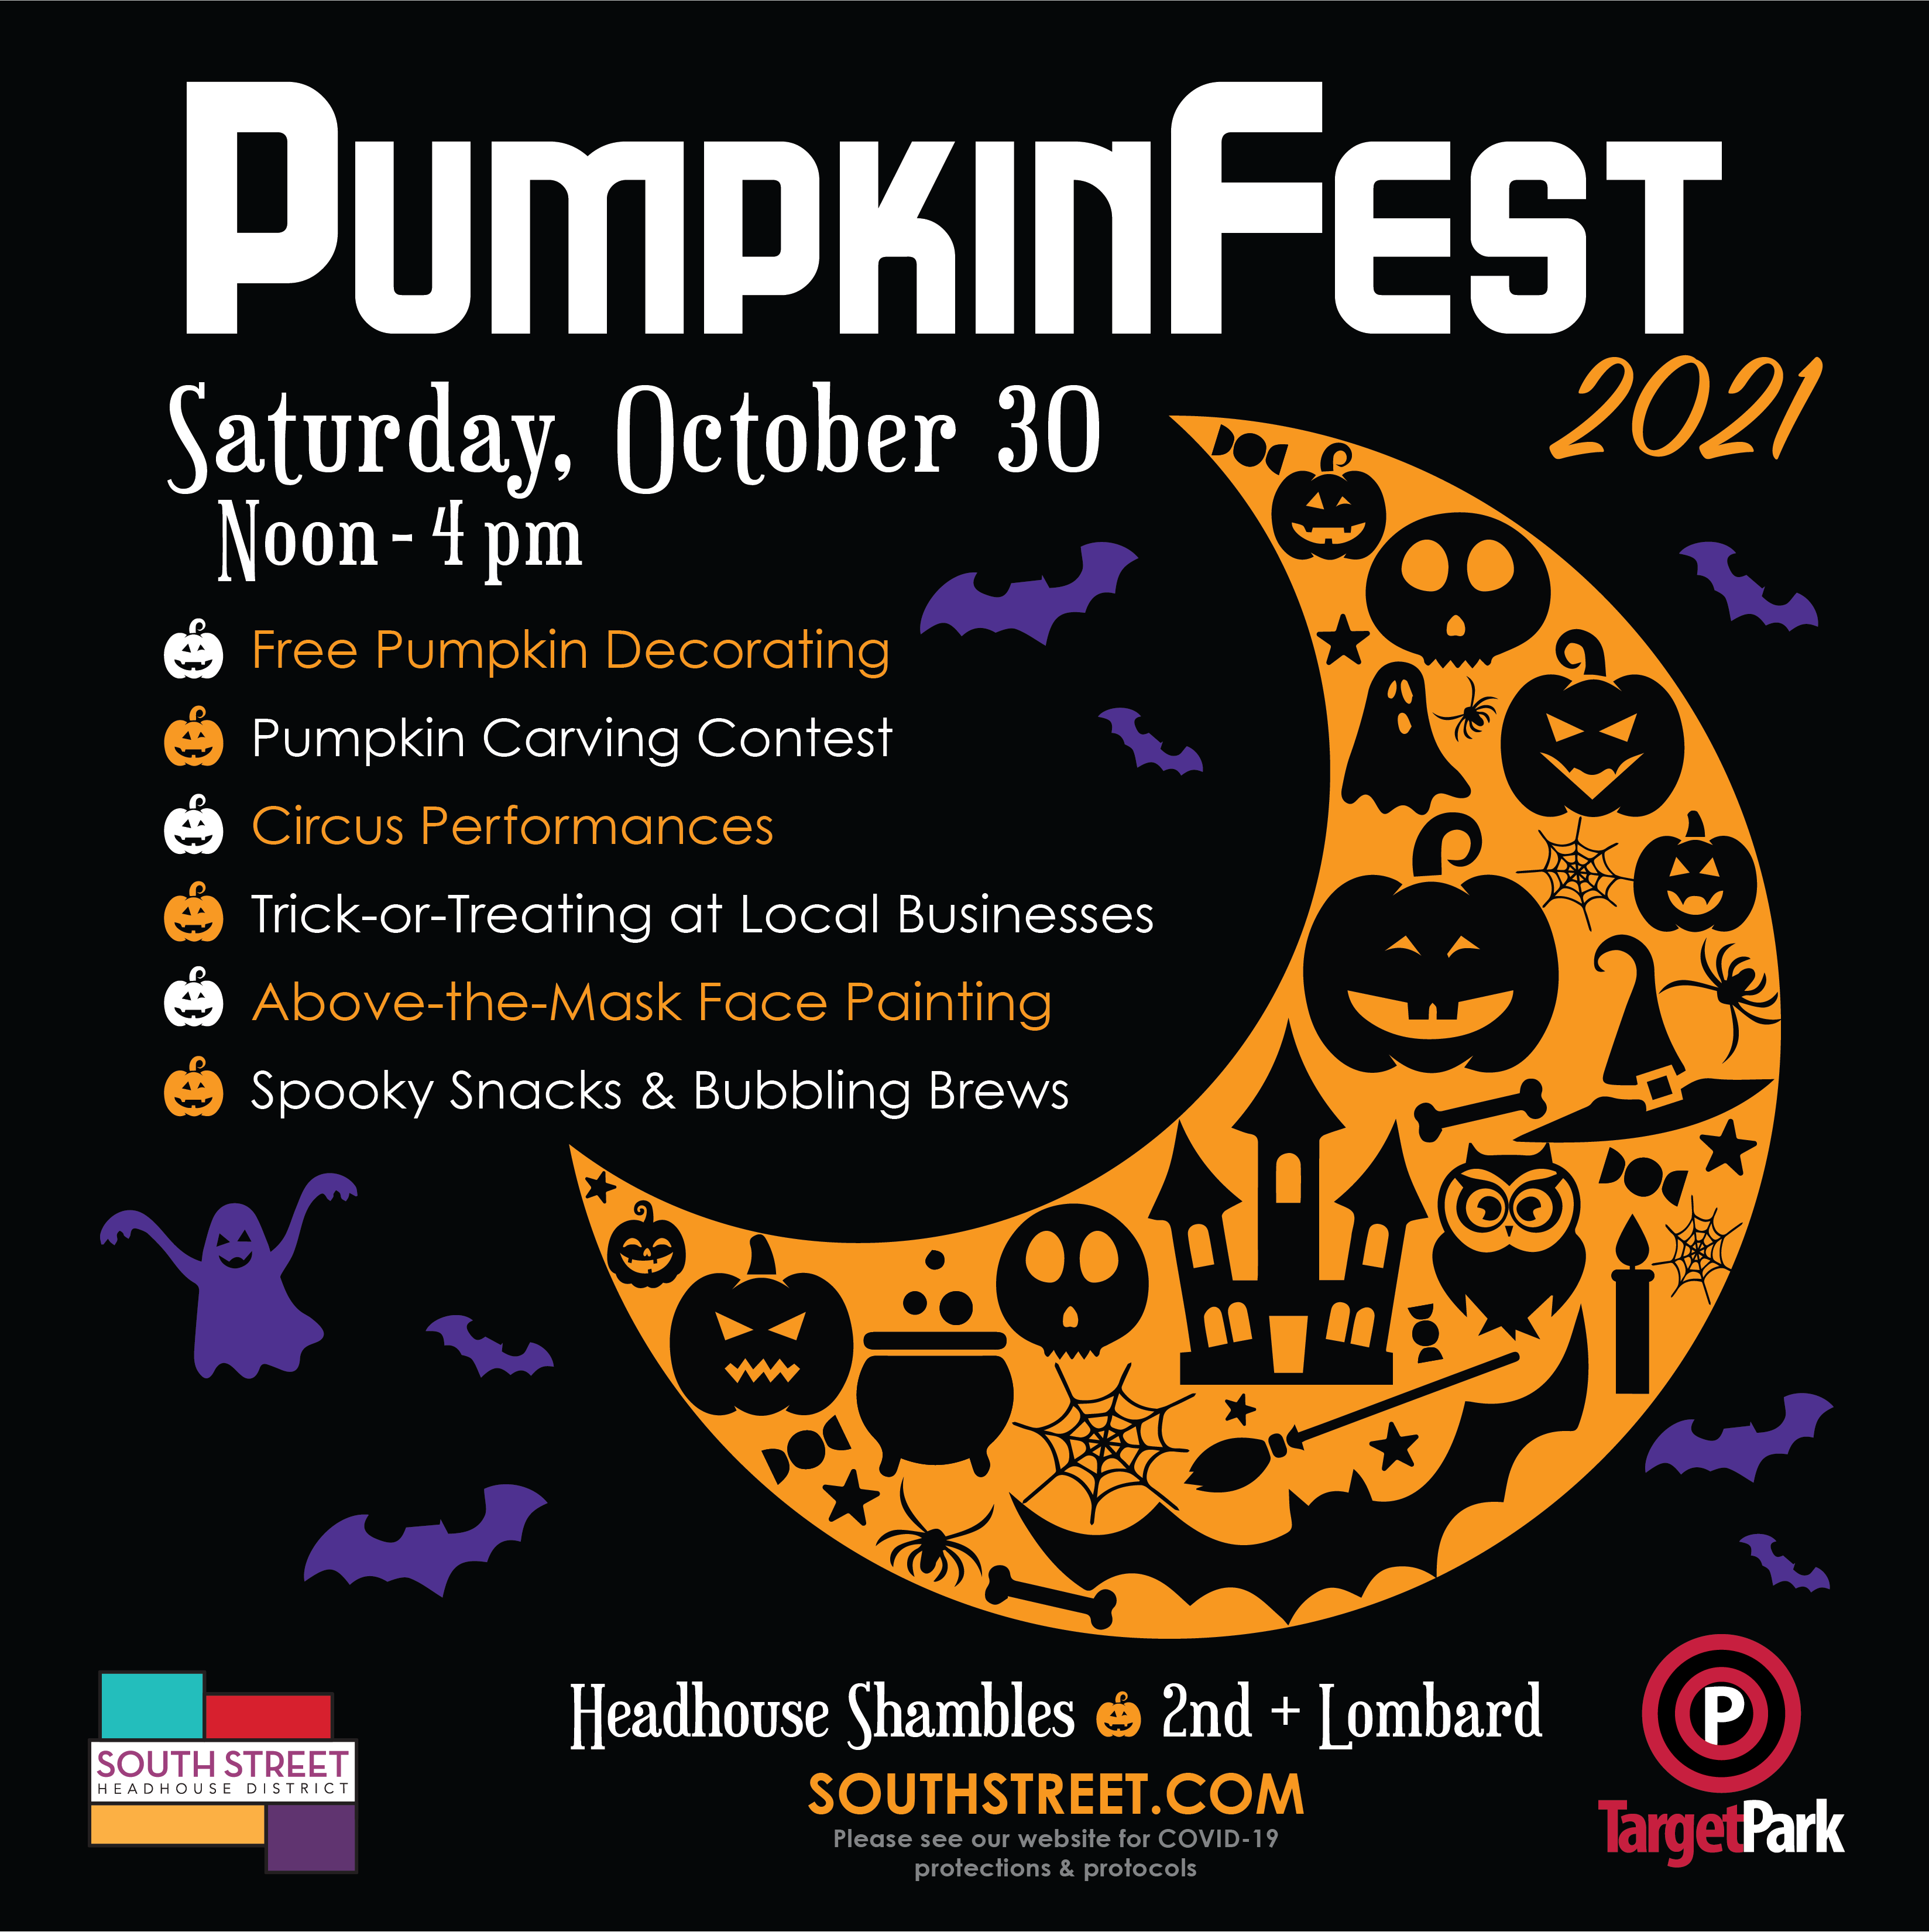 PumpkinFest 2021 - South Street